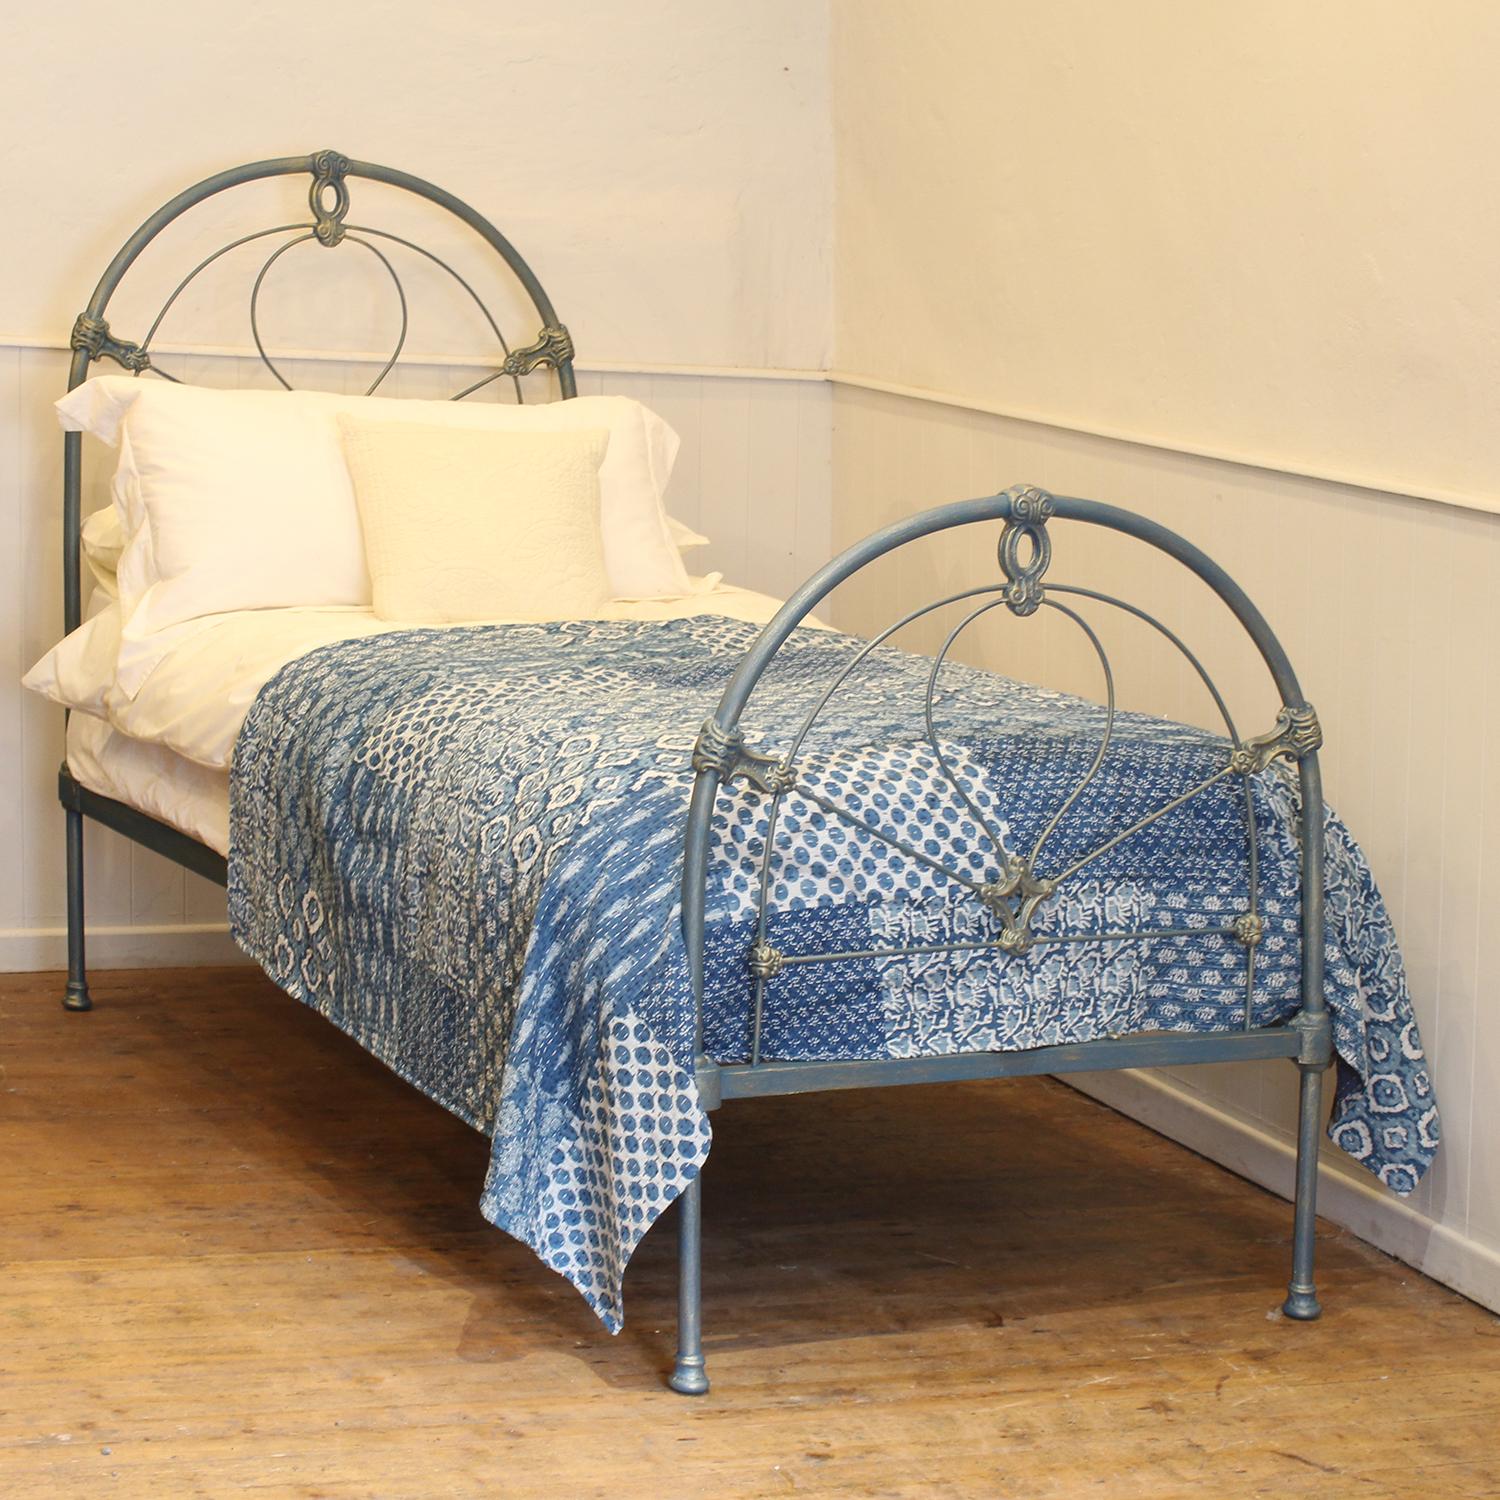 Ein traditionelles viktorianisches, antikes Bett aus Gusseisen in Blau und Gold mit Bogenmuster.
Dieses schöne originale antike Bett aus der späten viktorianischen Ära hat attraktive Gussteile, die durch die handgemalte Oberfläche hervorgehoben